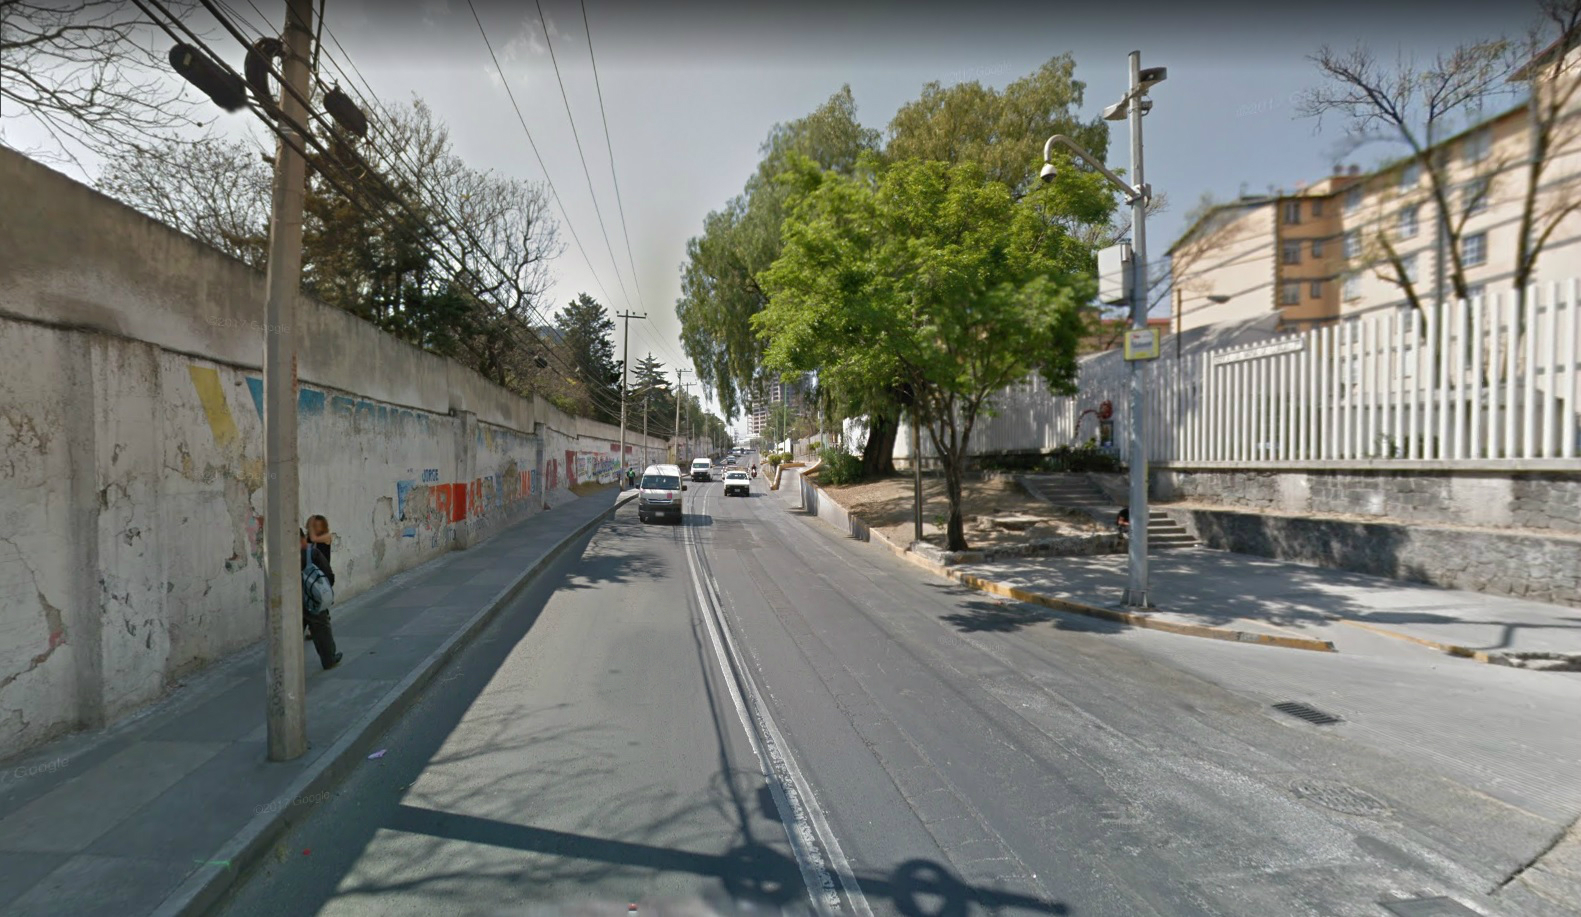 Matan a un hombre en la avenida México Tacuba, CDMX